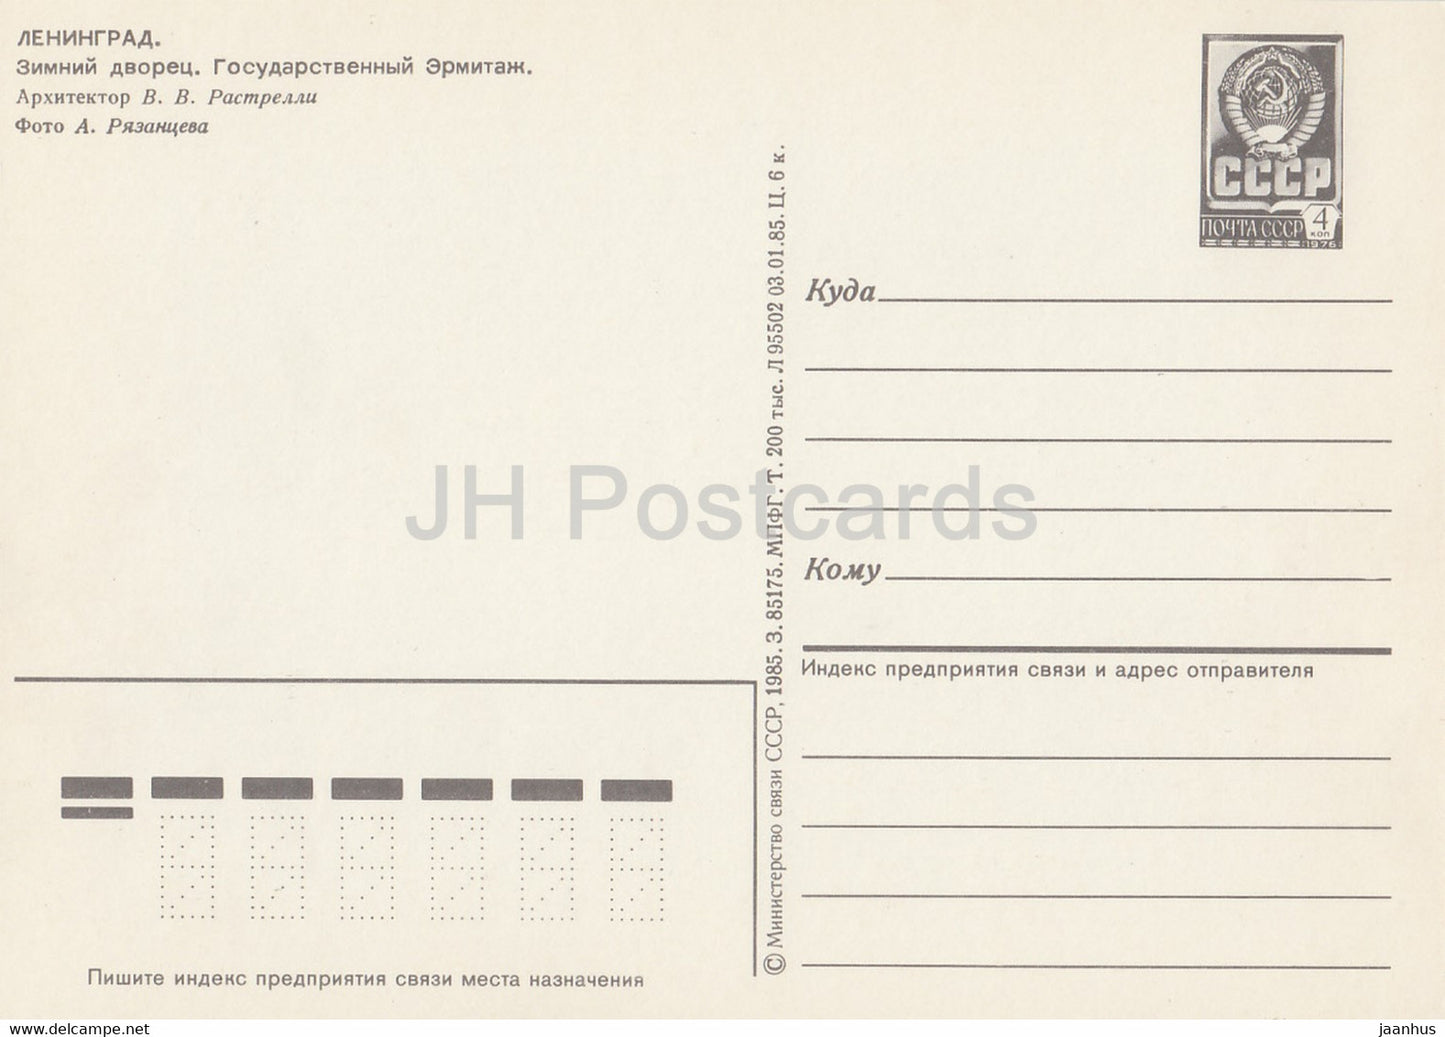 Leningrad - St Petersburg - Winter Palace - Hermitage - bus Ikarus - postal stationery - 1985 - Russia USSR - unused